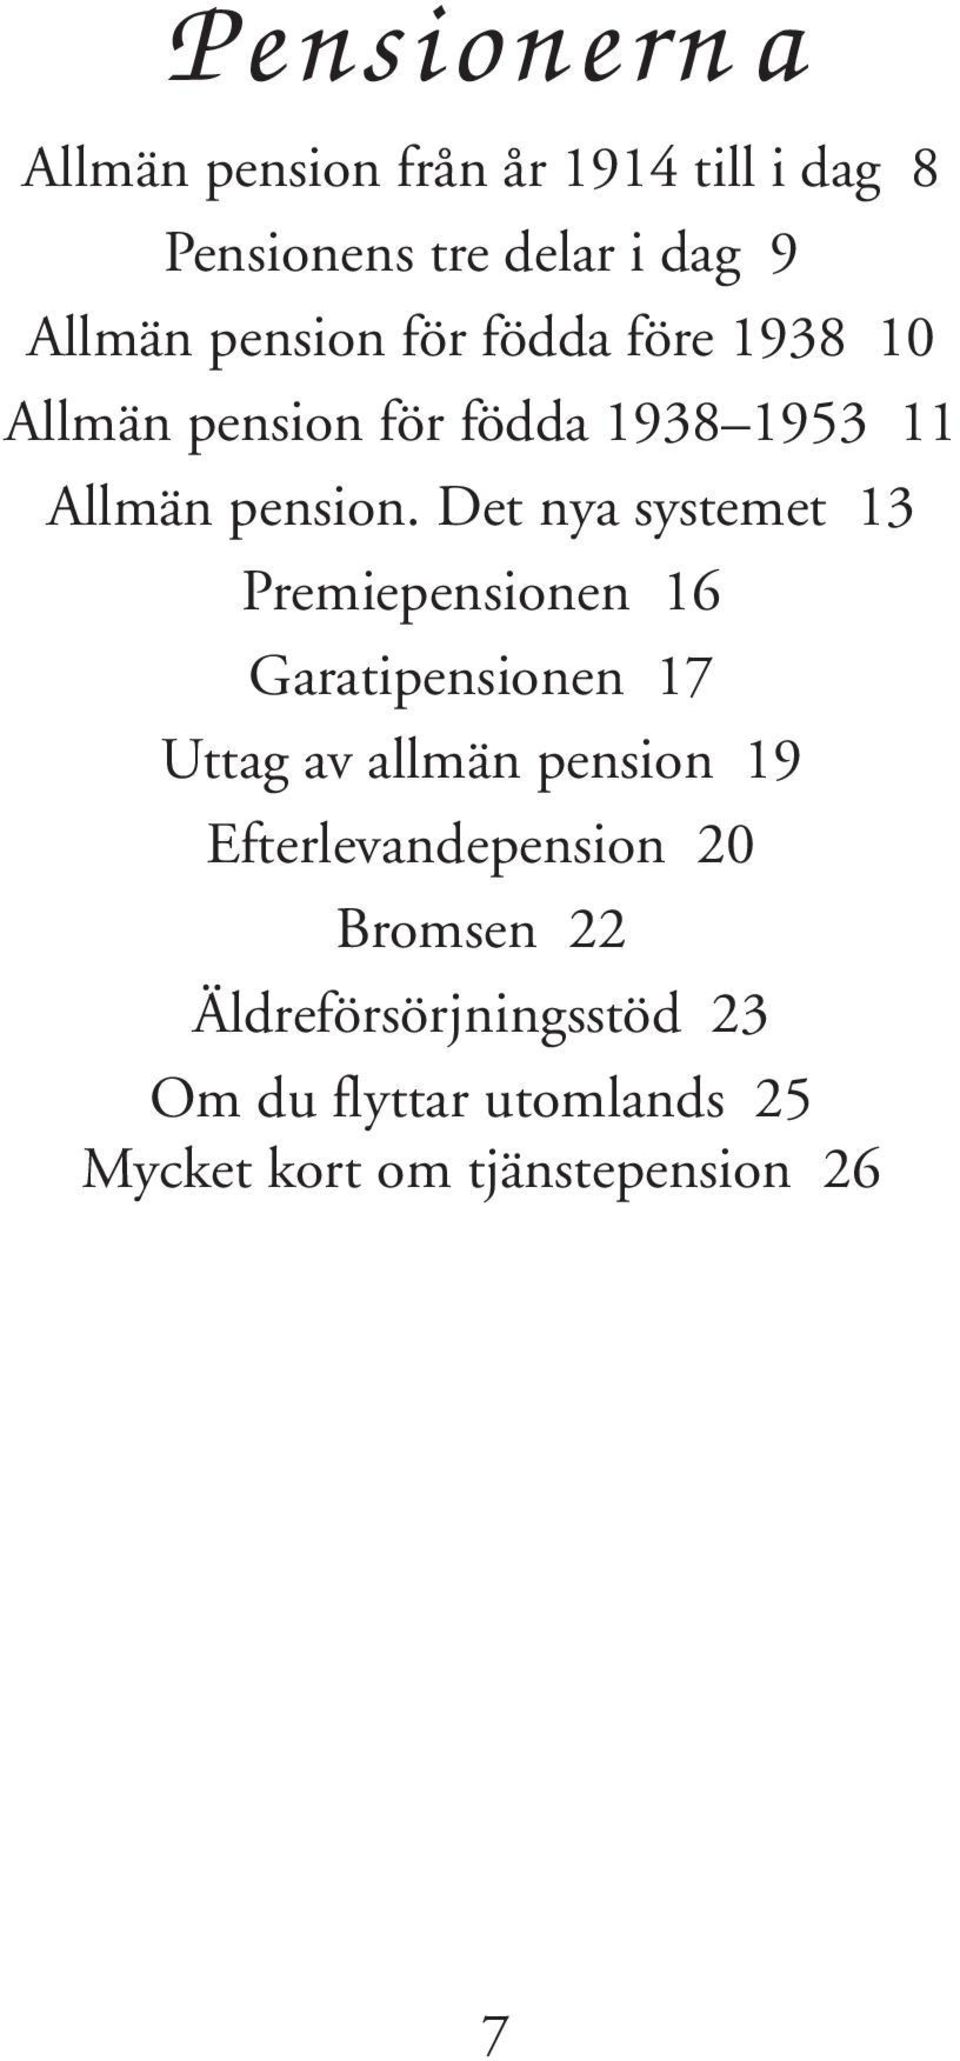 Det nya systemet 13 Premiepensionen 16 Garatipensionen 17 Uttag av allmän pension 19